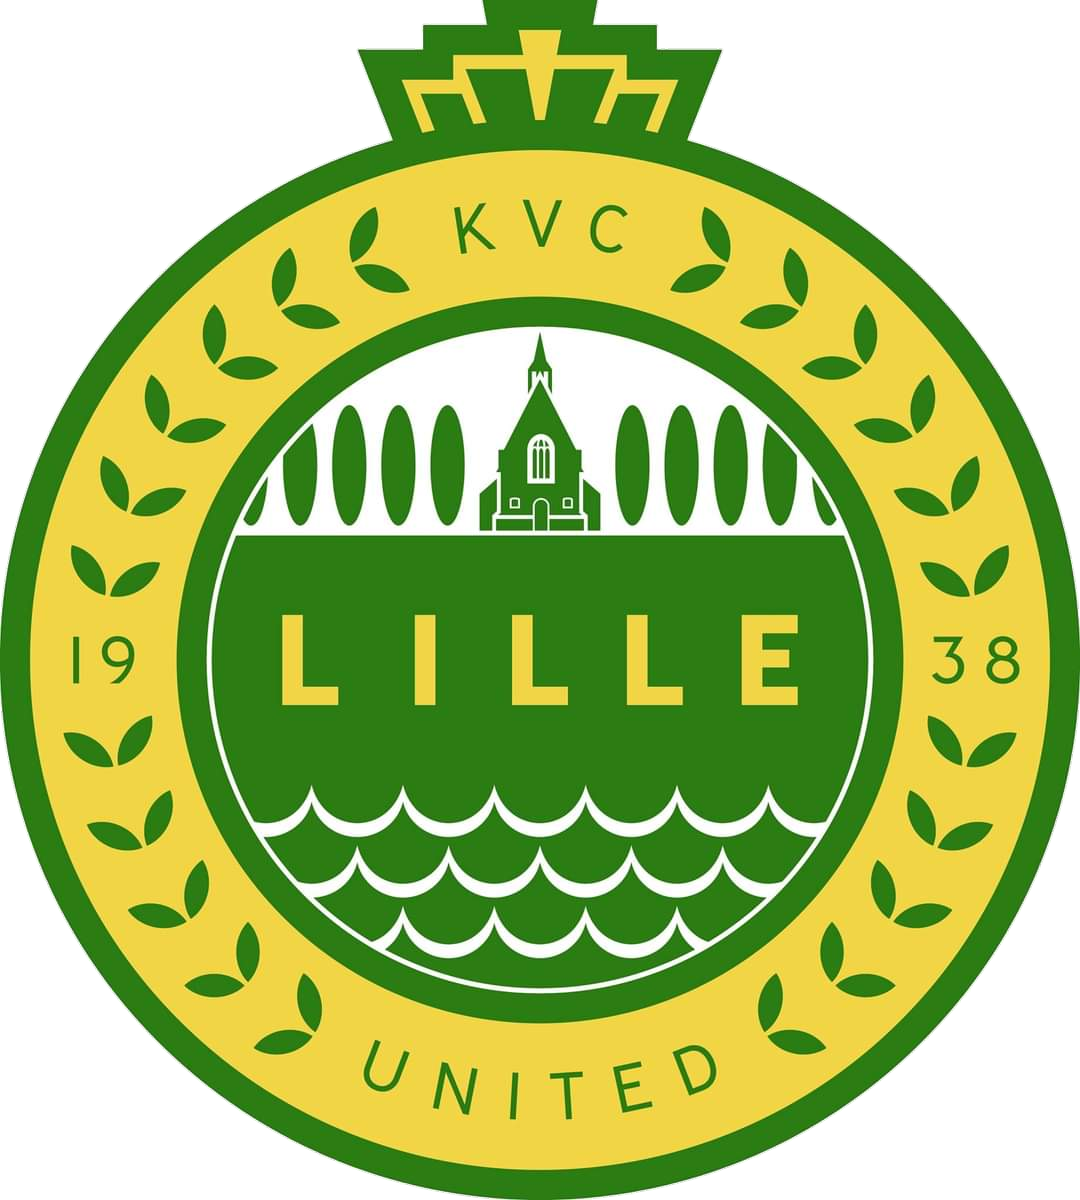 Wappen KVC Lille United diverse  93231